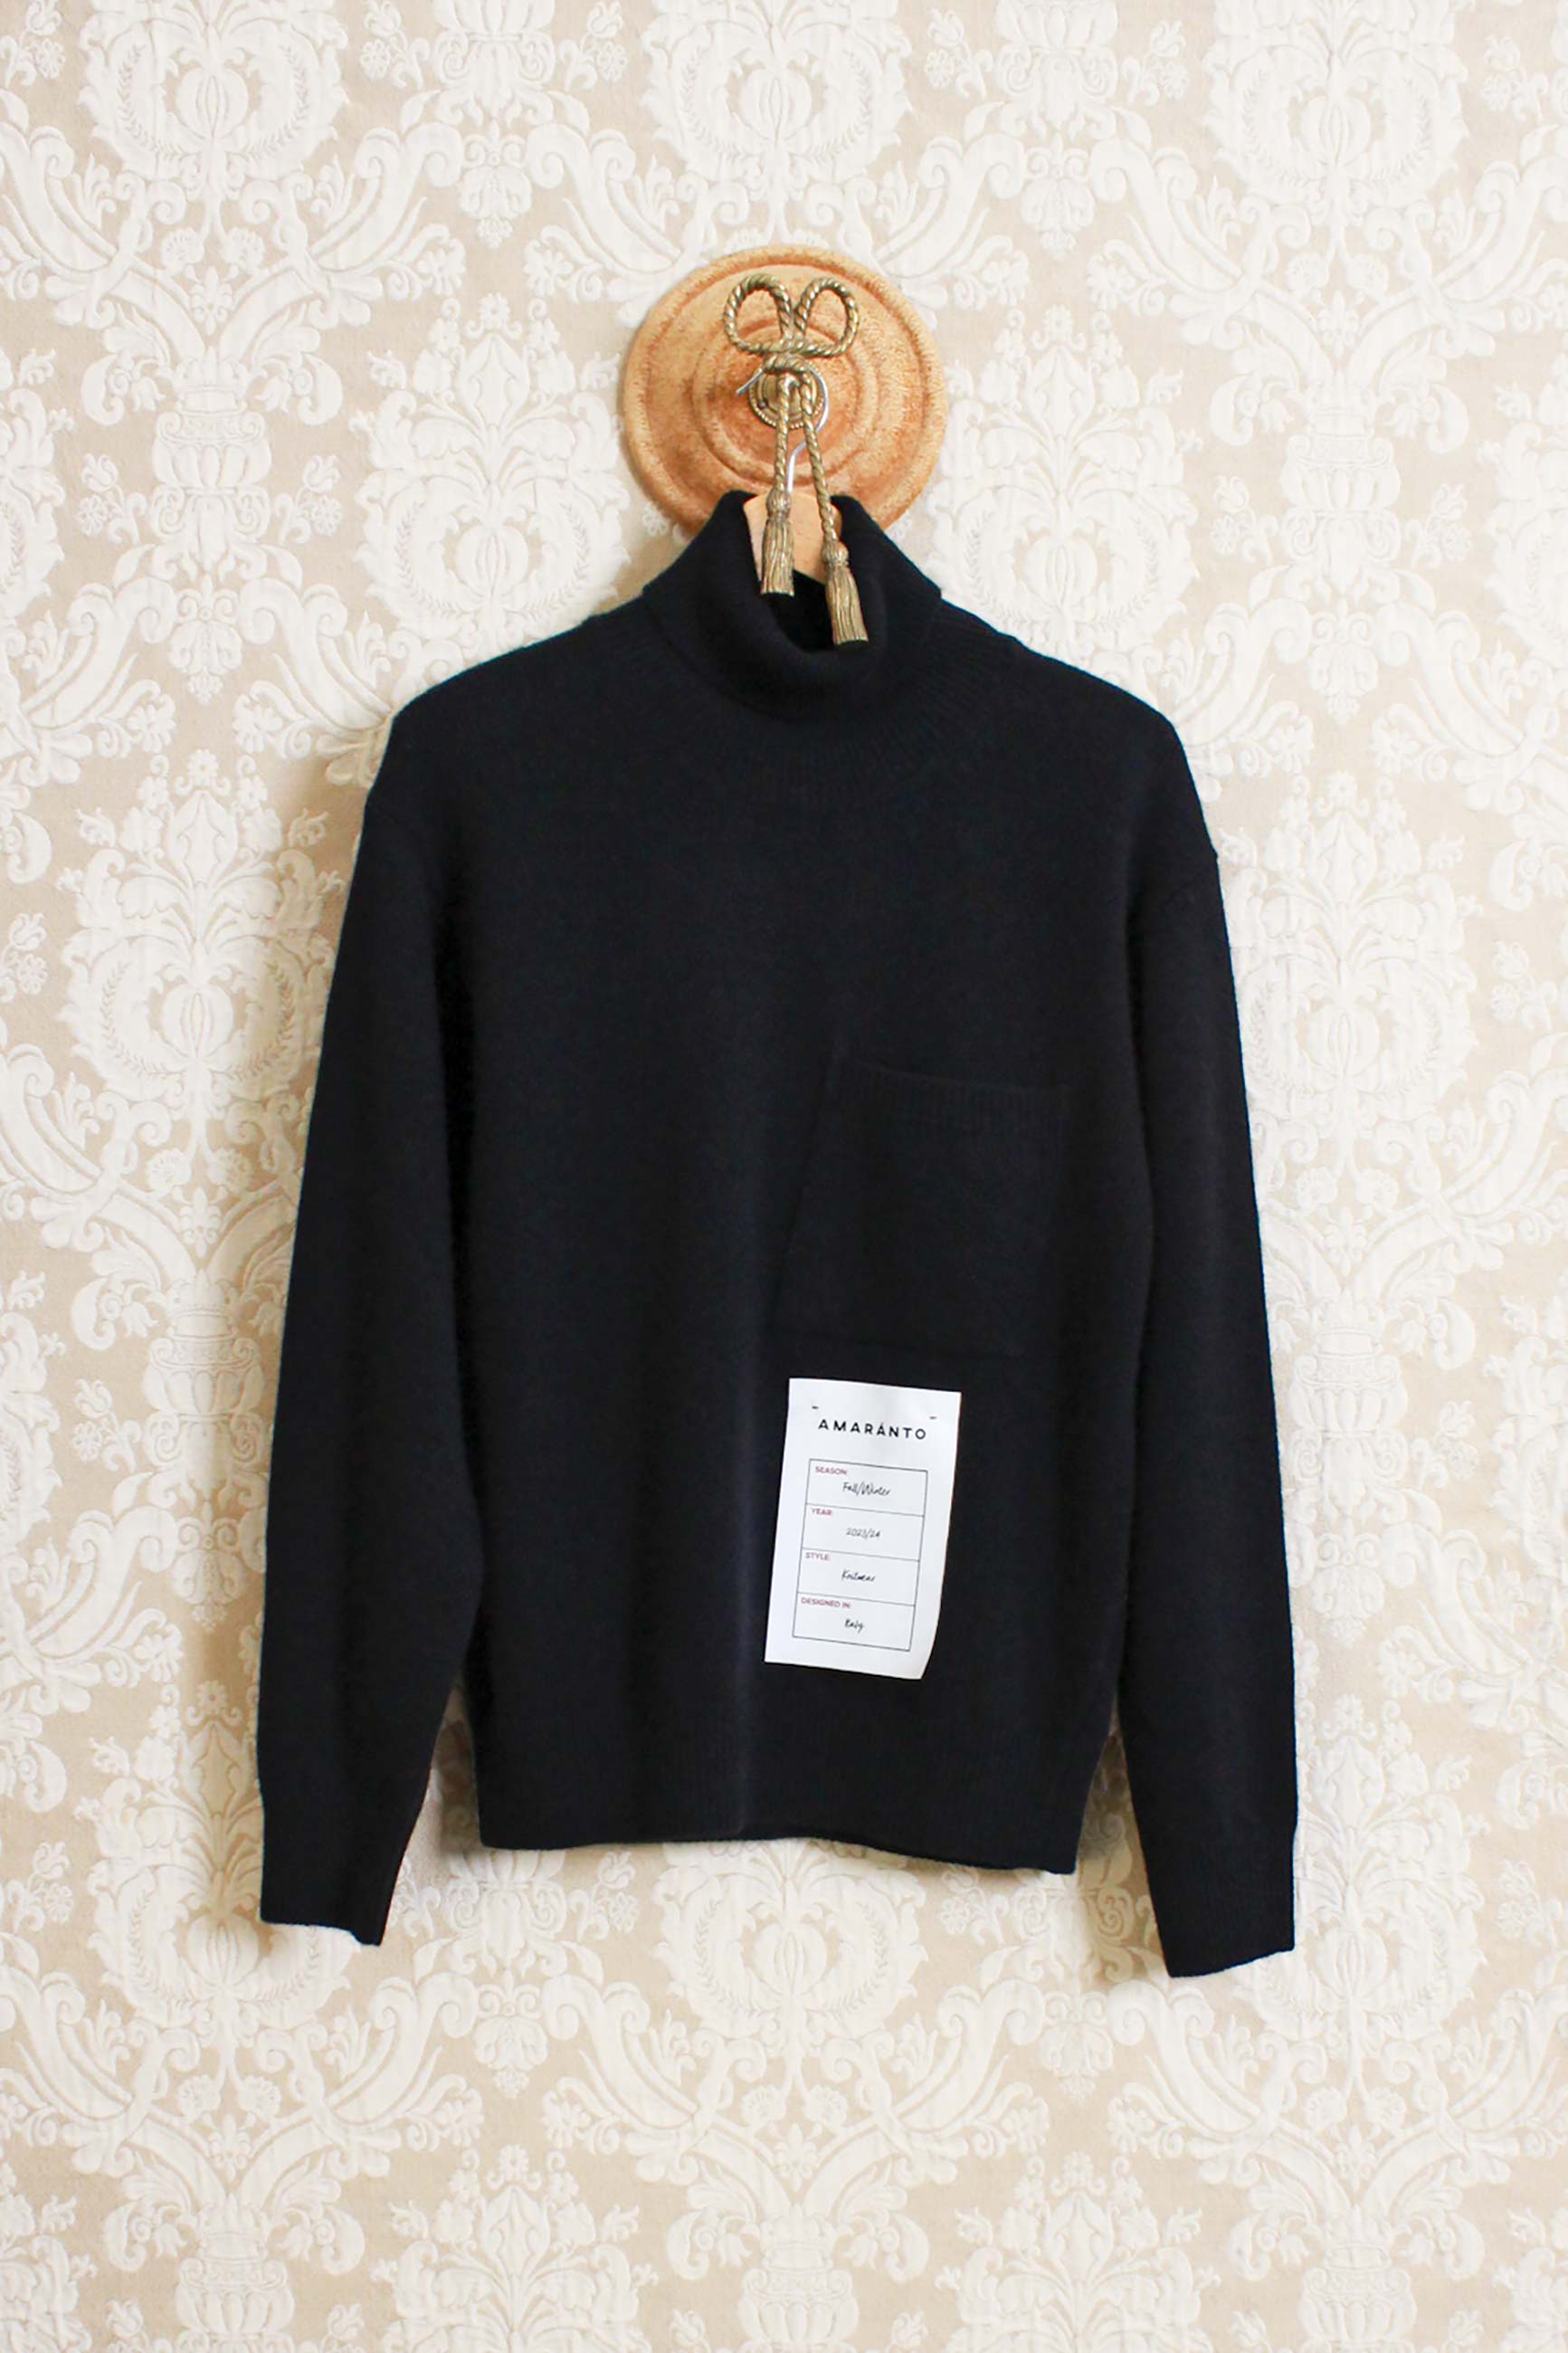 Dolcevita uomo in lana merino con tasca a toppa della maison amaranto color total black